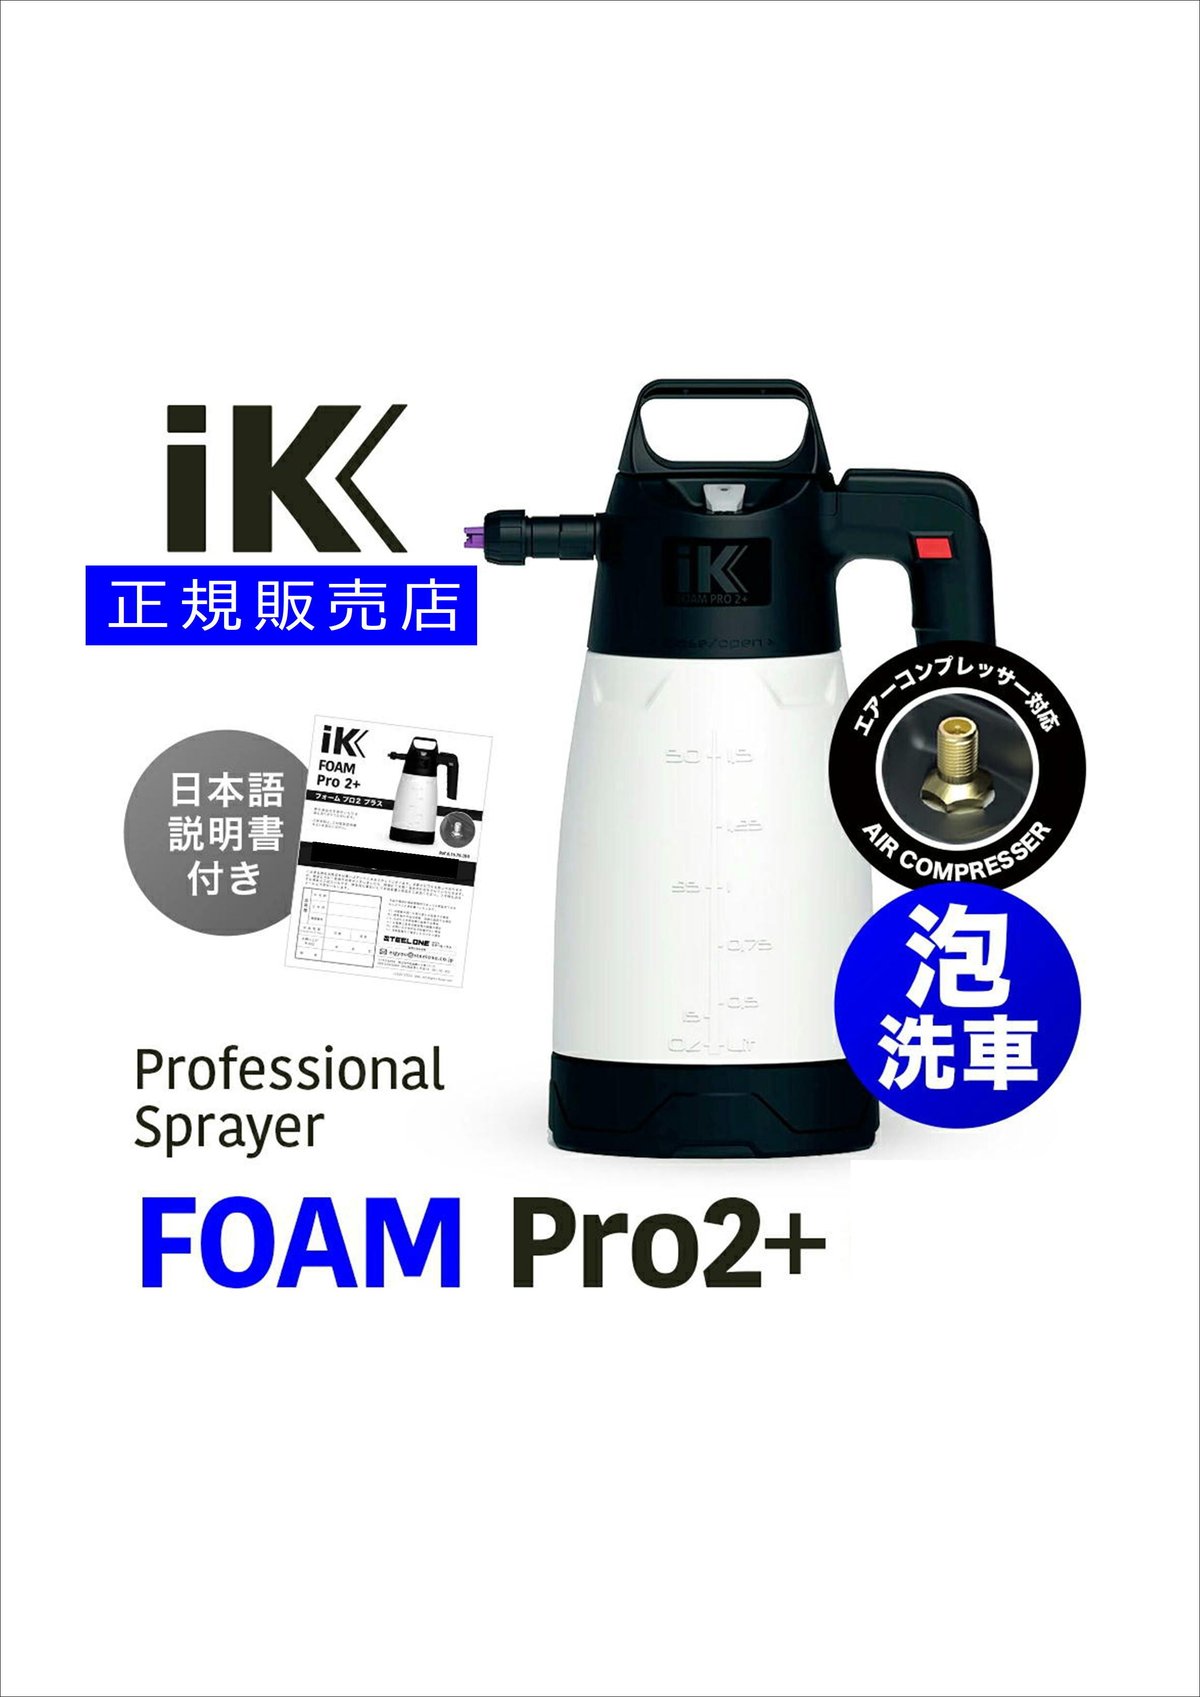 IK Foam Pro 2 Plus